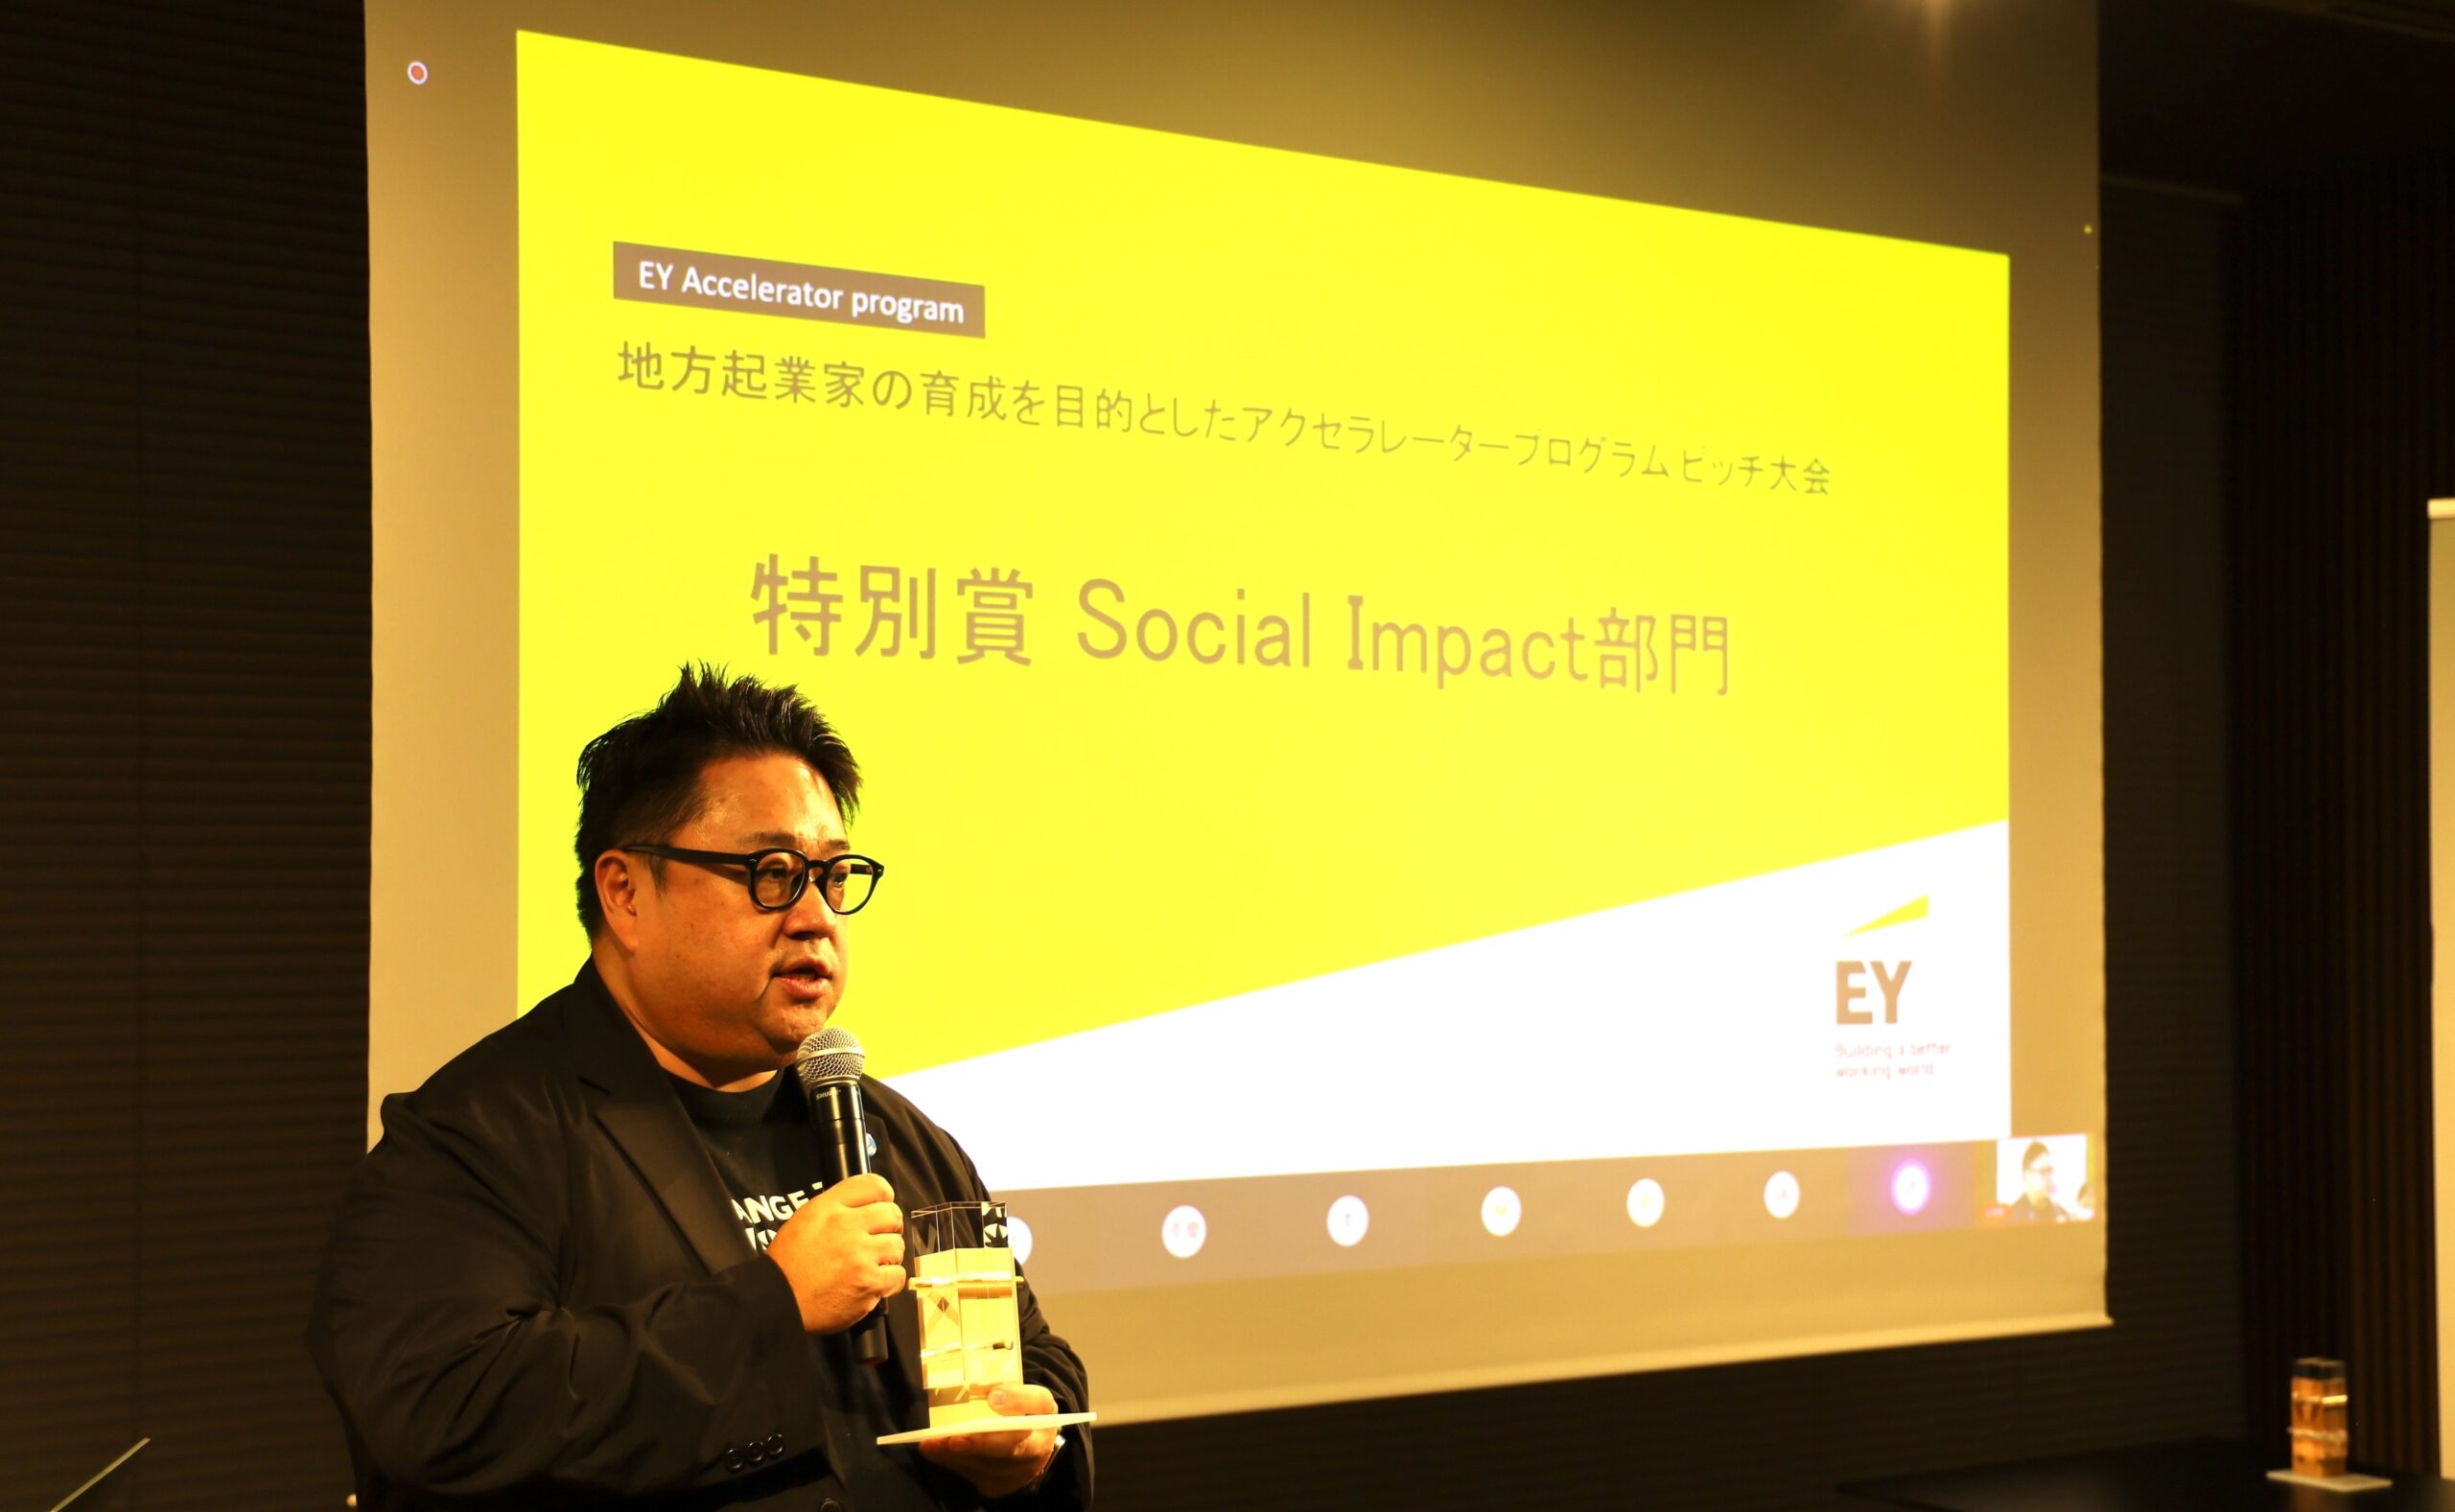 EY Japan、経済産業省等が共同開催するアクセラレータープログラムにて「Social Impact 部門 特別賞」を受賞いたしました